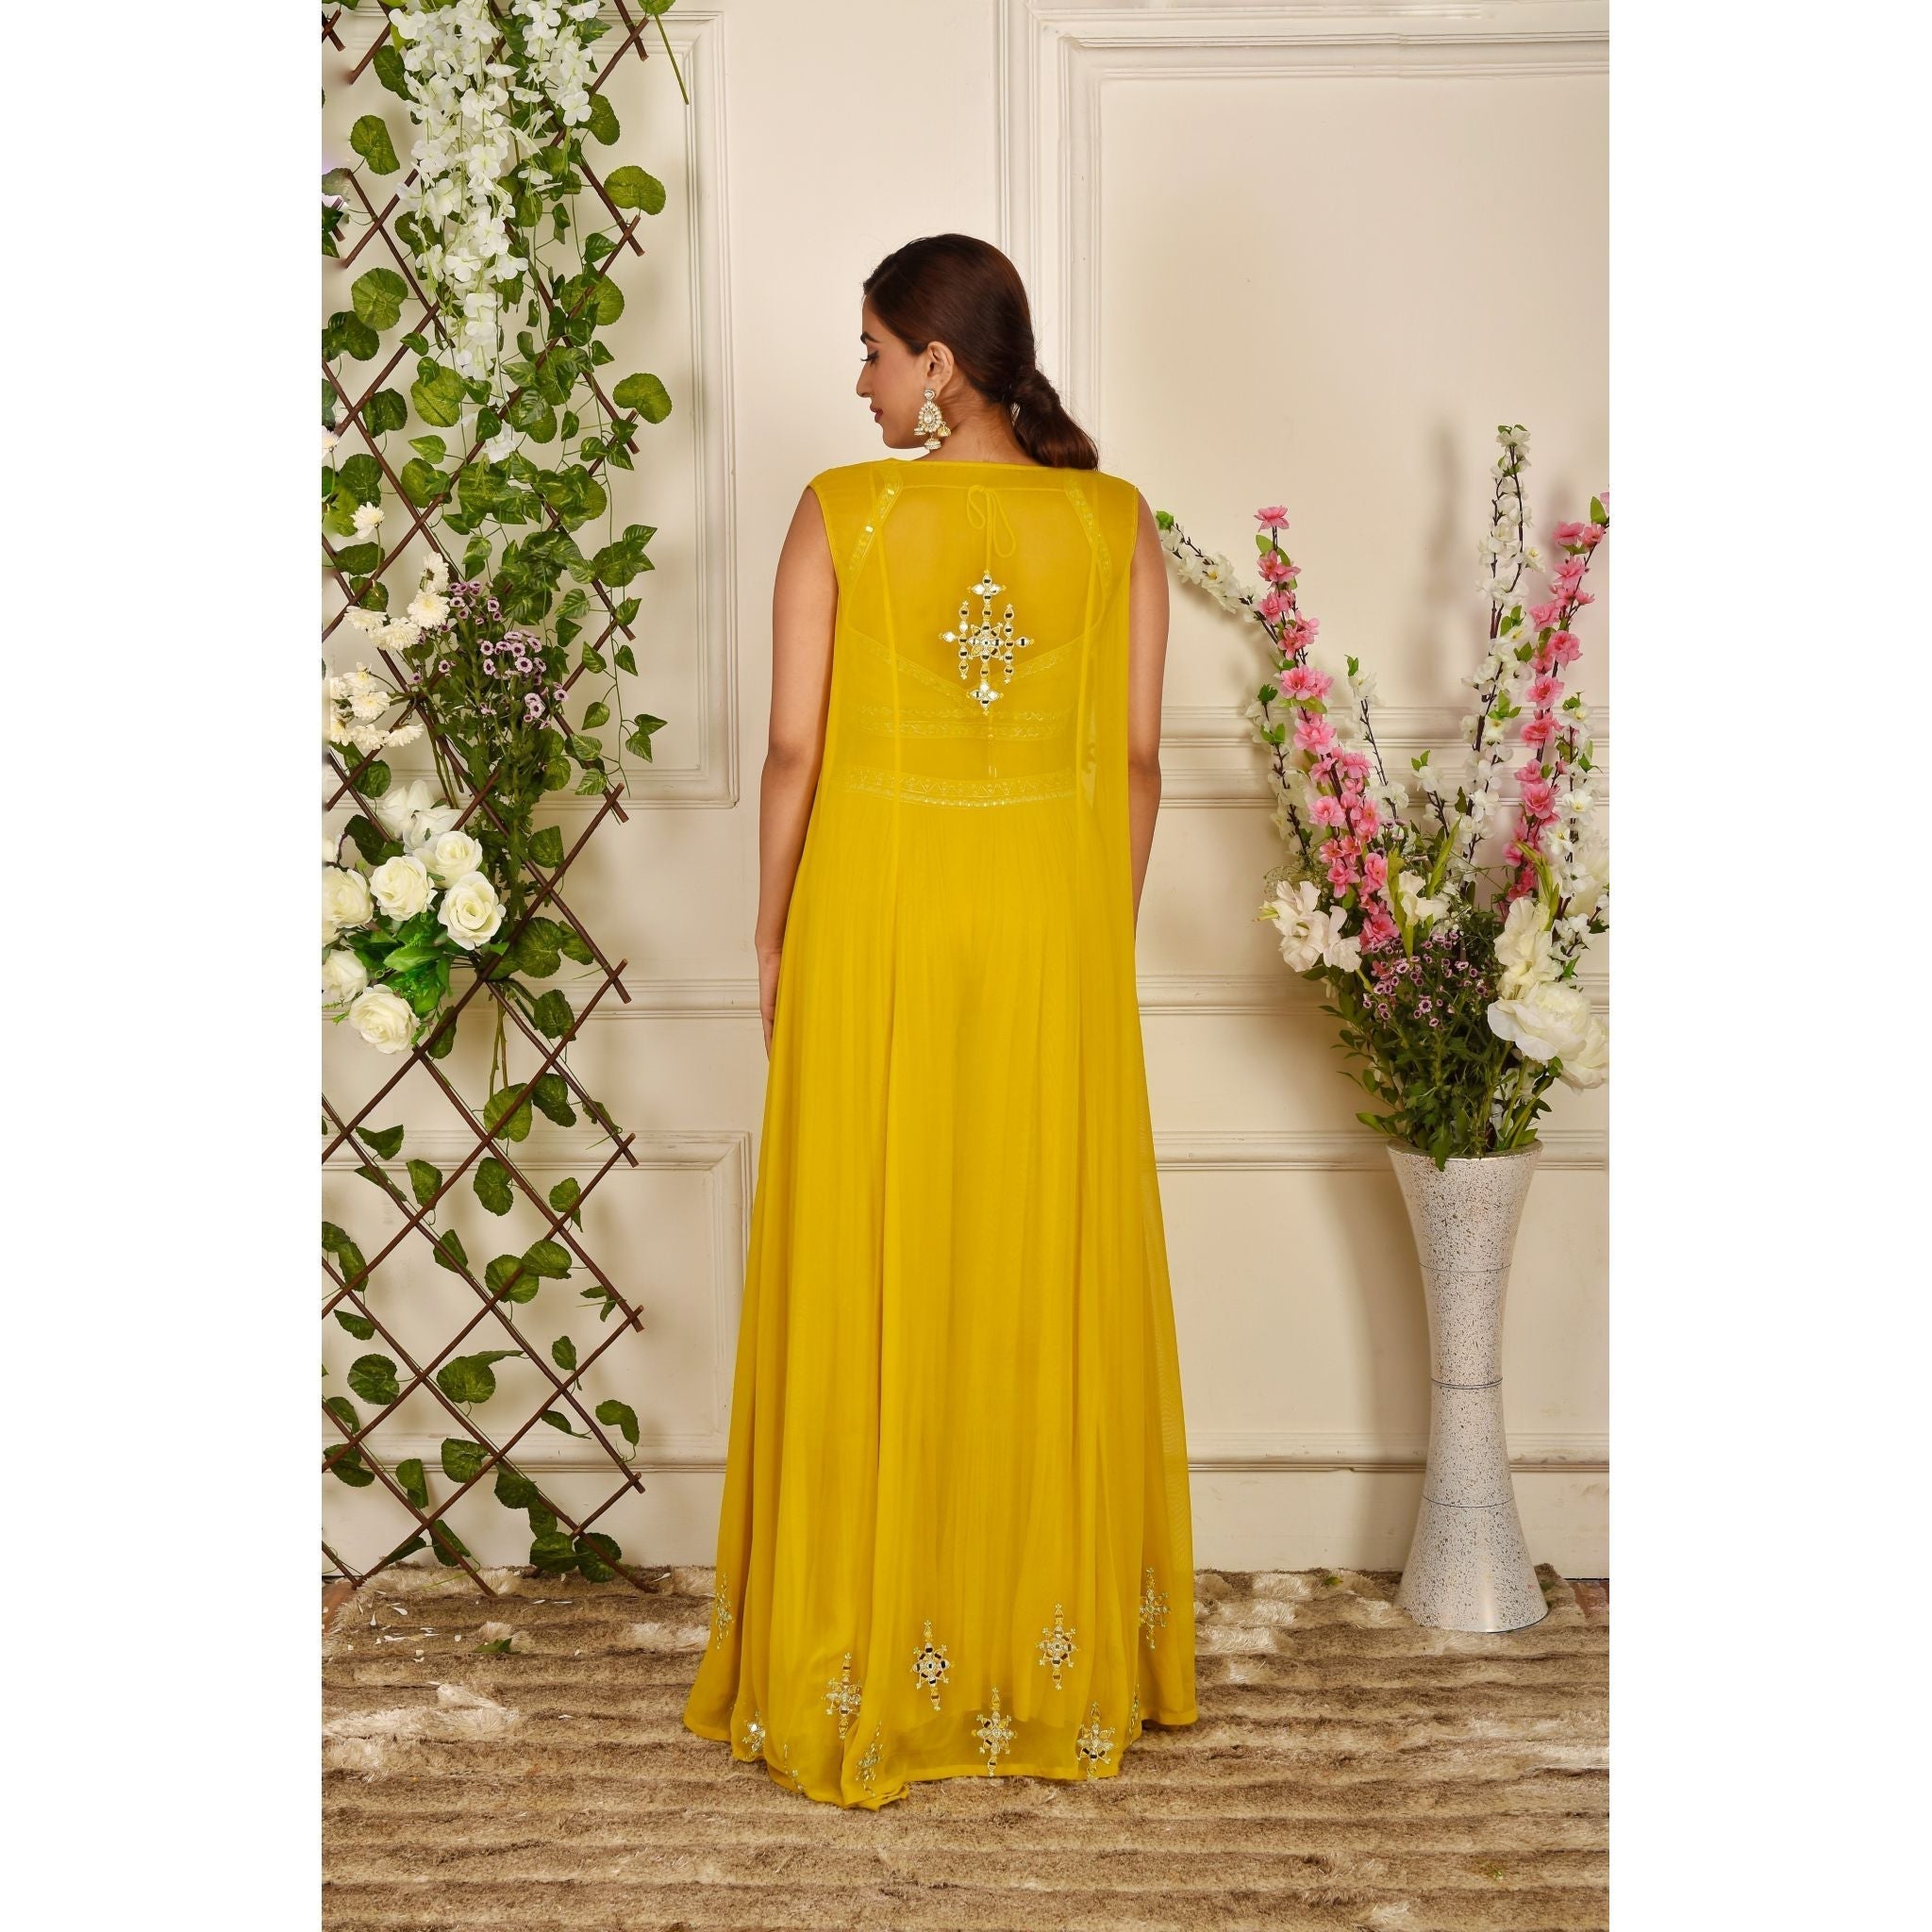 Yellow Mirrorwork Palazzo Jacket Set - Indian Designer Bridal Wedding Outfit